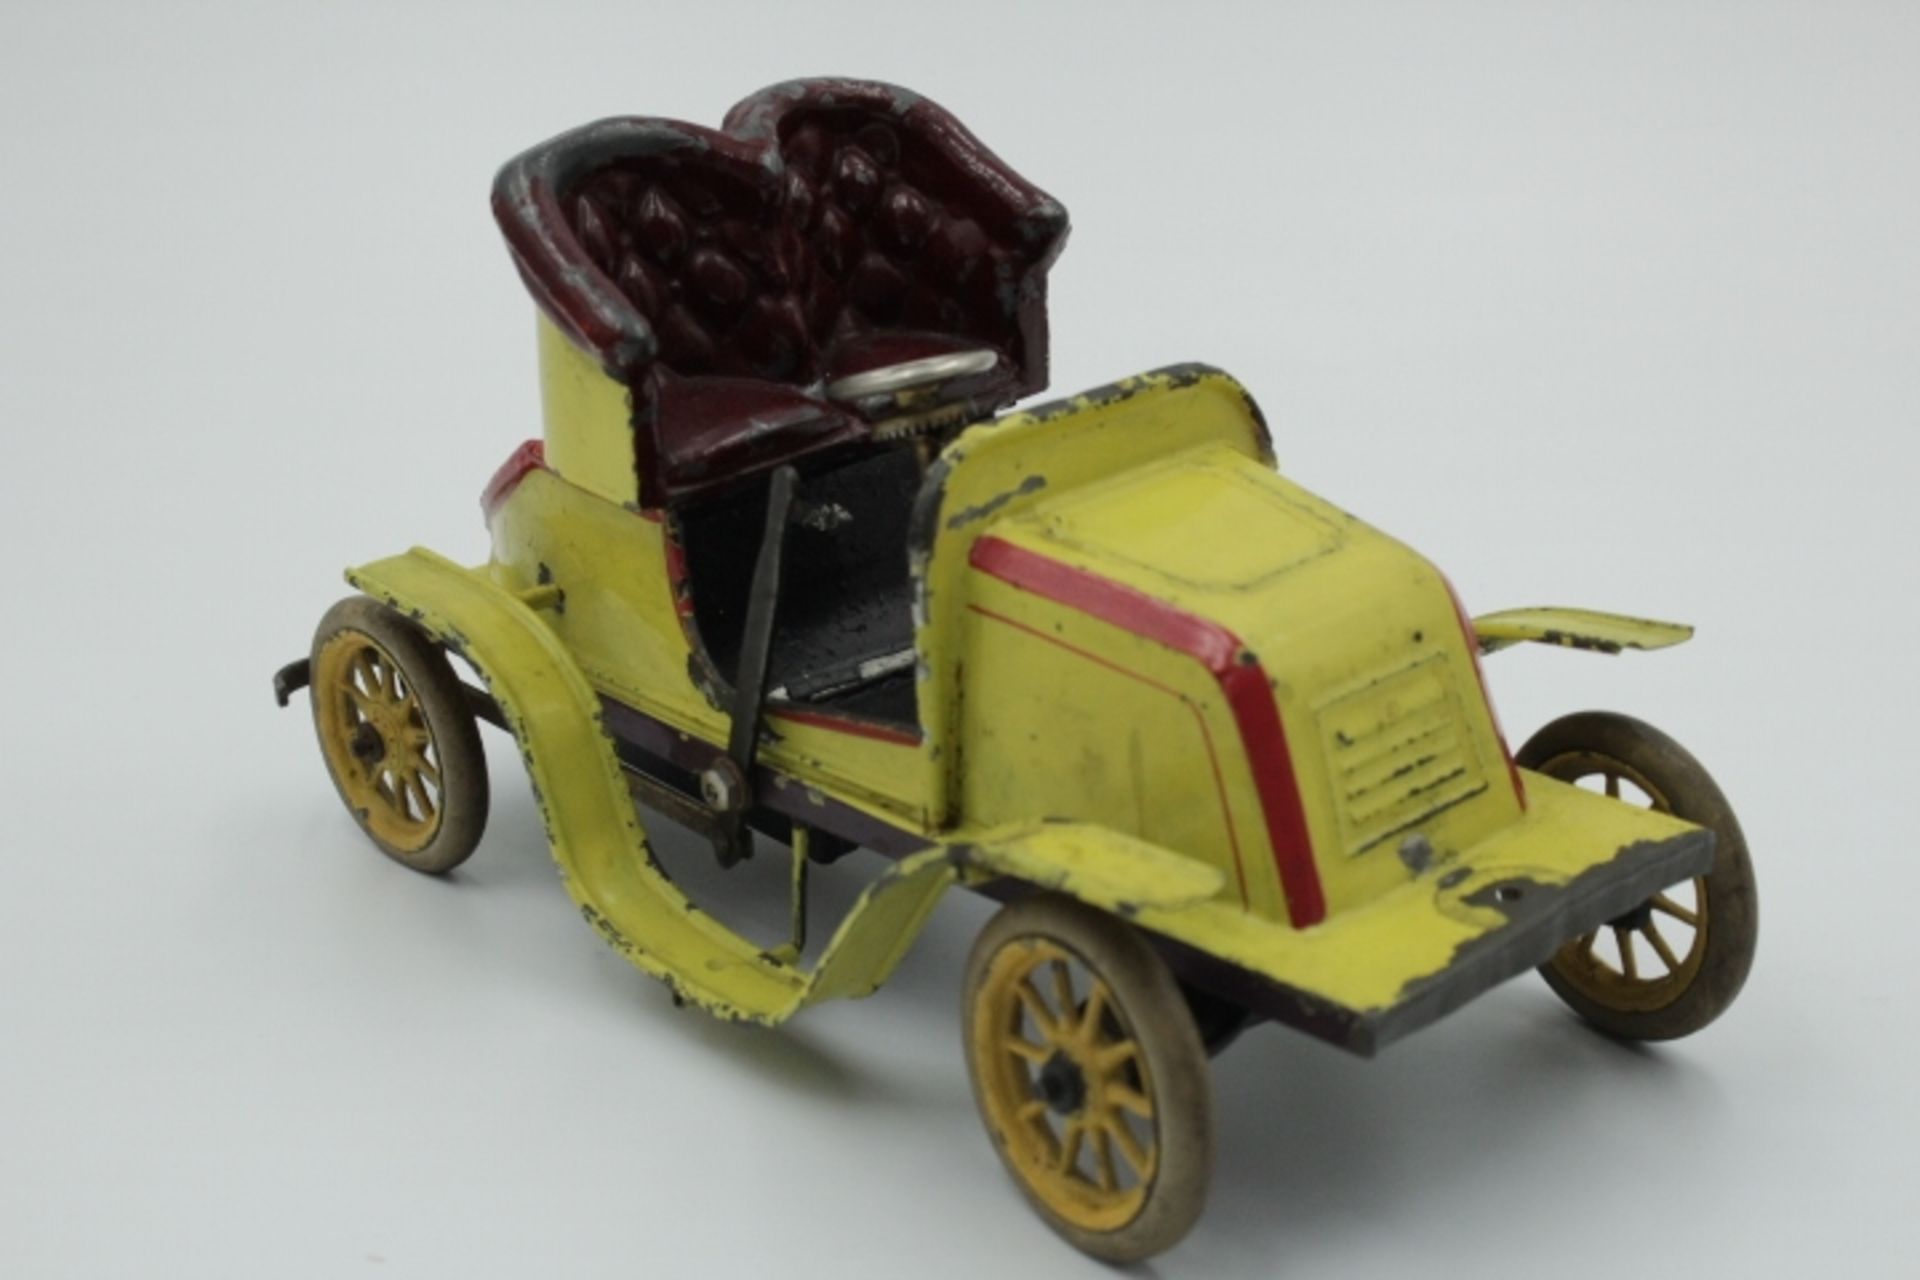 Bing Uralt Auto Blech Farbig gefasst wohl um 1910 Federwerk nicht geprüft,Gummibereifung bespielter - Image 3 of 3